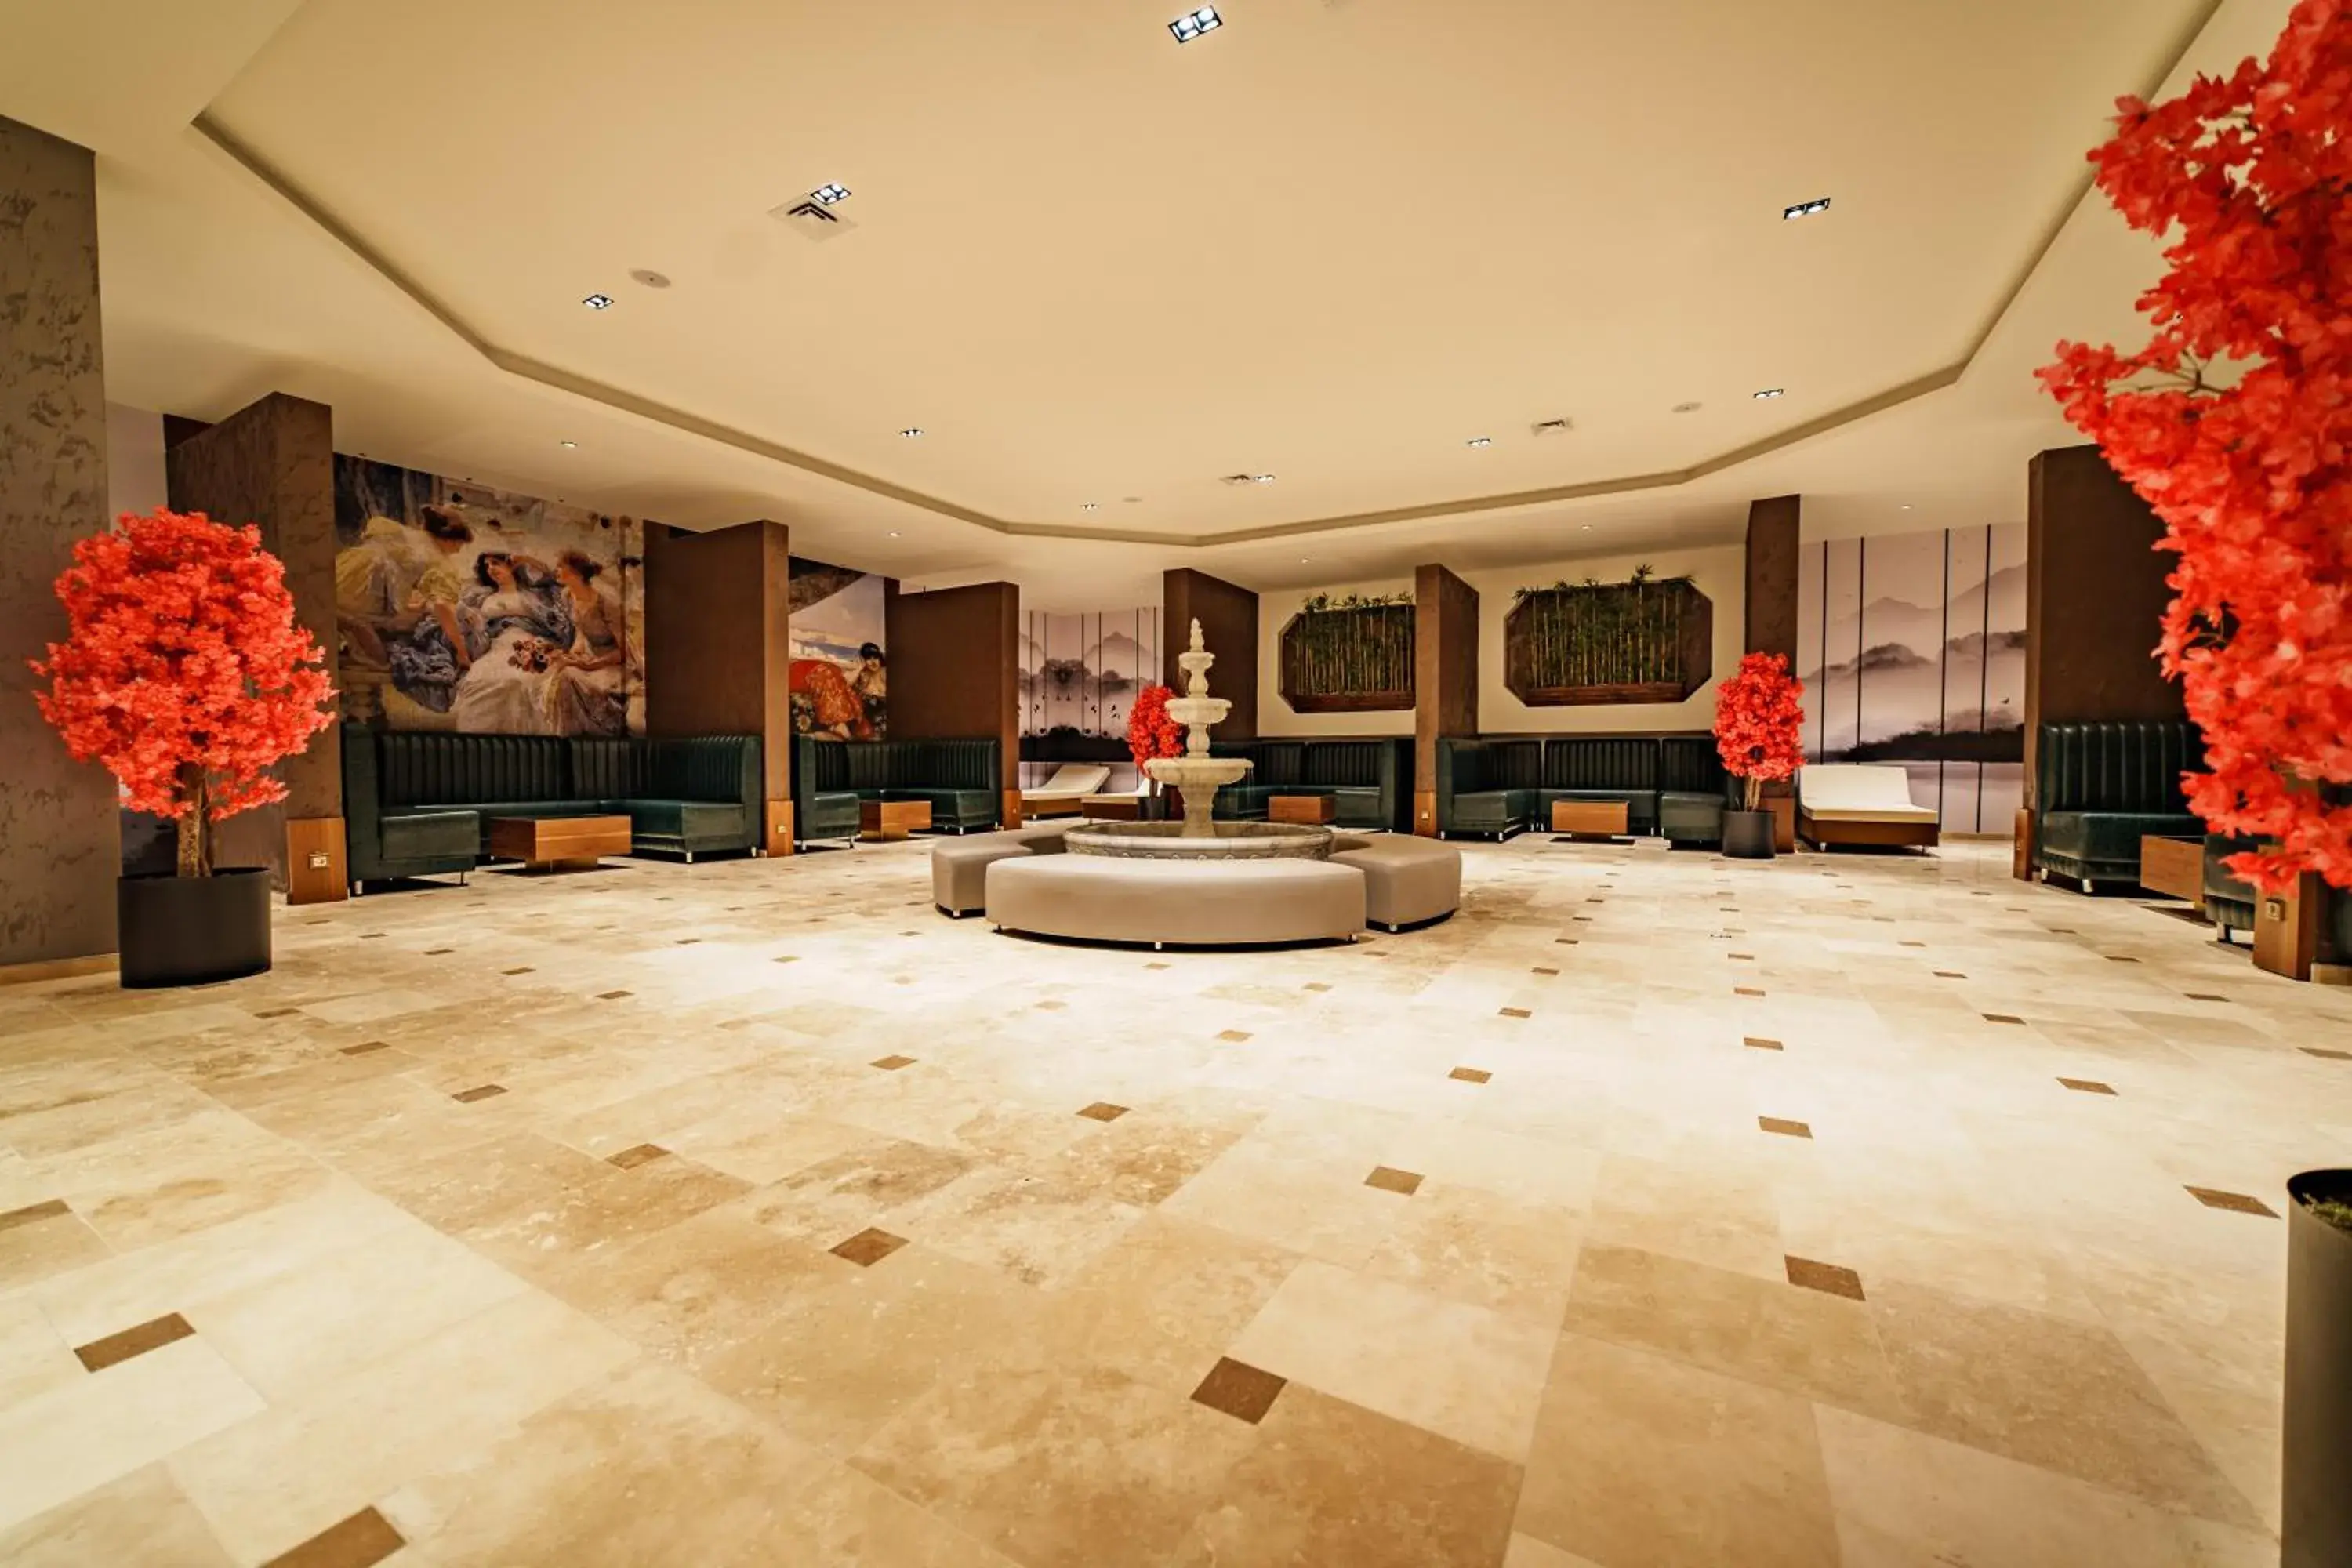 Lobby or reception, Lobby/Reception in Anadolu Hotels Esenboga Thermal